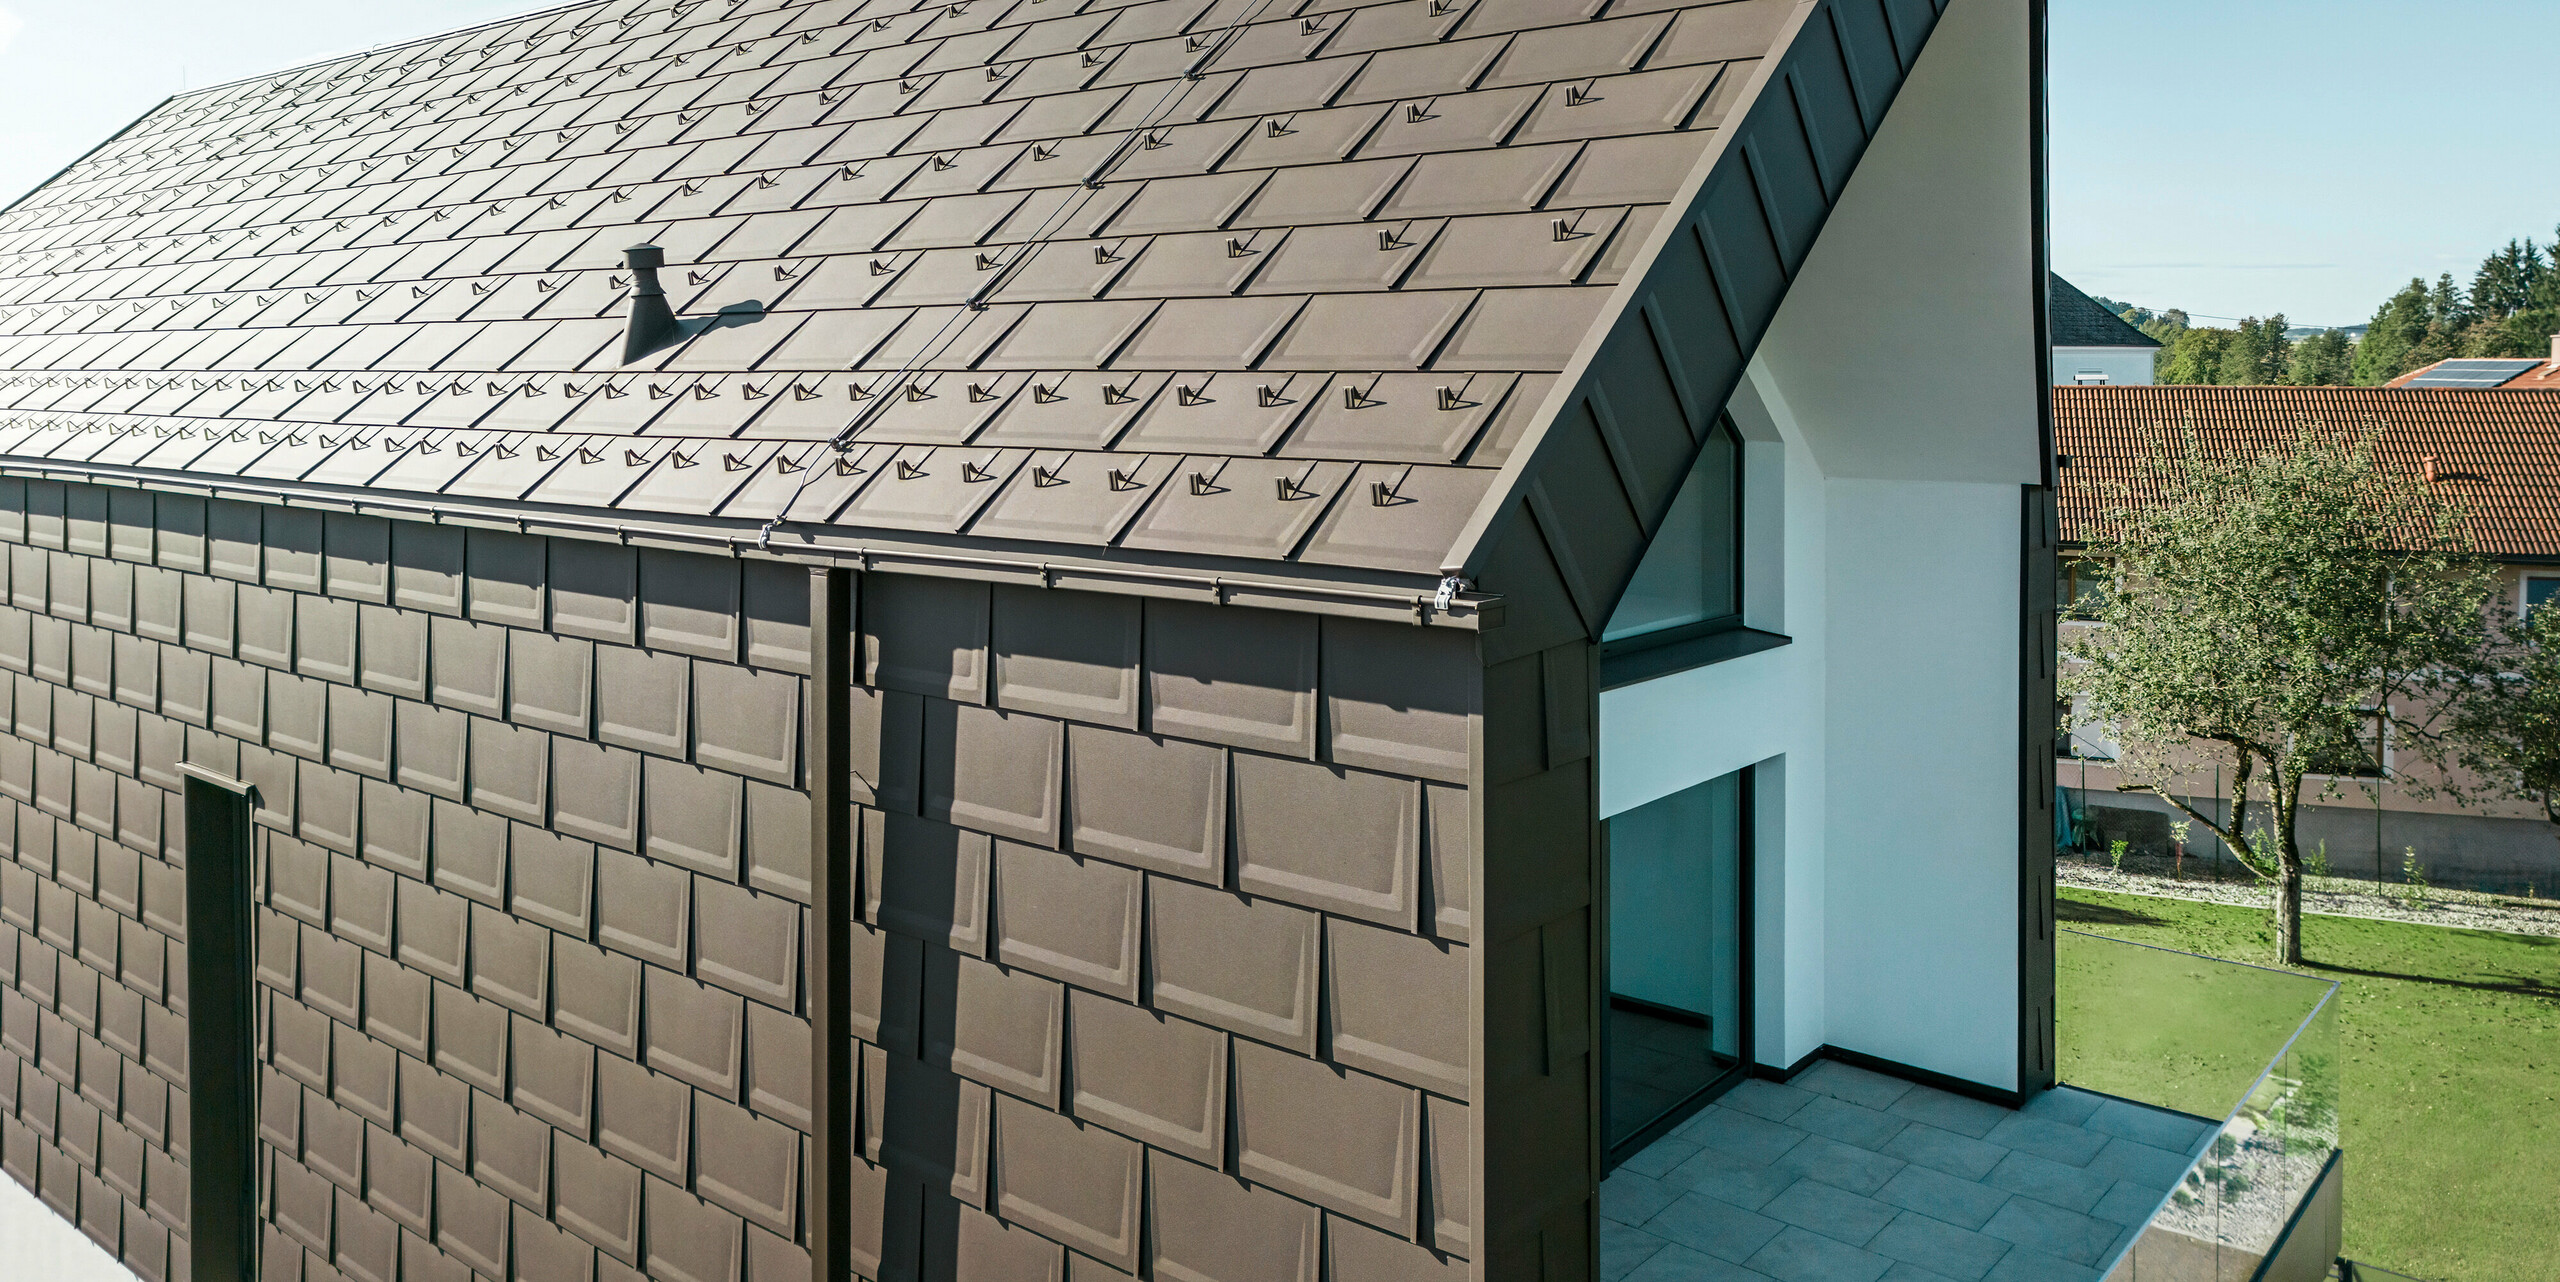 Perspektivní pohled na střechu a fasádu moderního rodinného domu v rakouském Neukirchenu. Střešní panel PREFA R.16 v hnědé barvě P.10 nabízí estetické a funkční zastřešení, které dokonale zapadá do architektonického řešení domu. Ostrý hřeben střechy a přesné uspořádání střešních panelů dokládají kvalitu PREFA. Maloformátové hliníkové výrobky výborně ladí s bílou omítnutou fasádní částí a okolní zelenou krajinou.